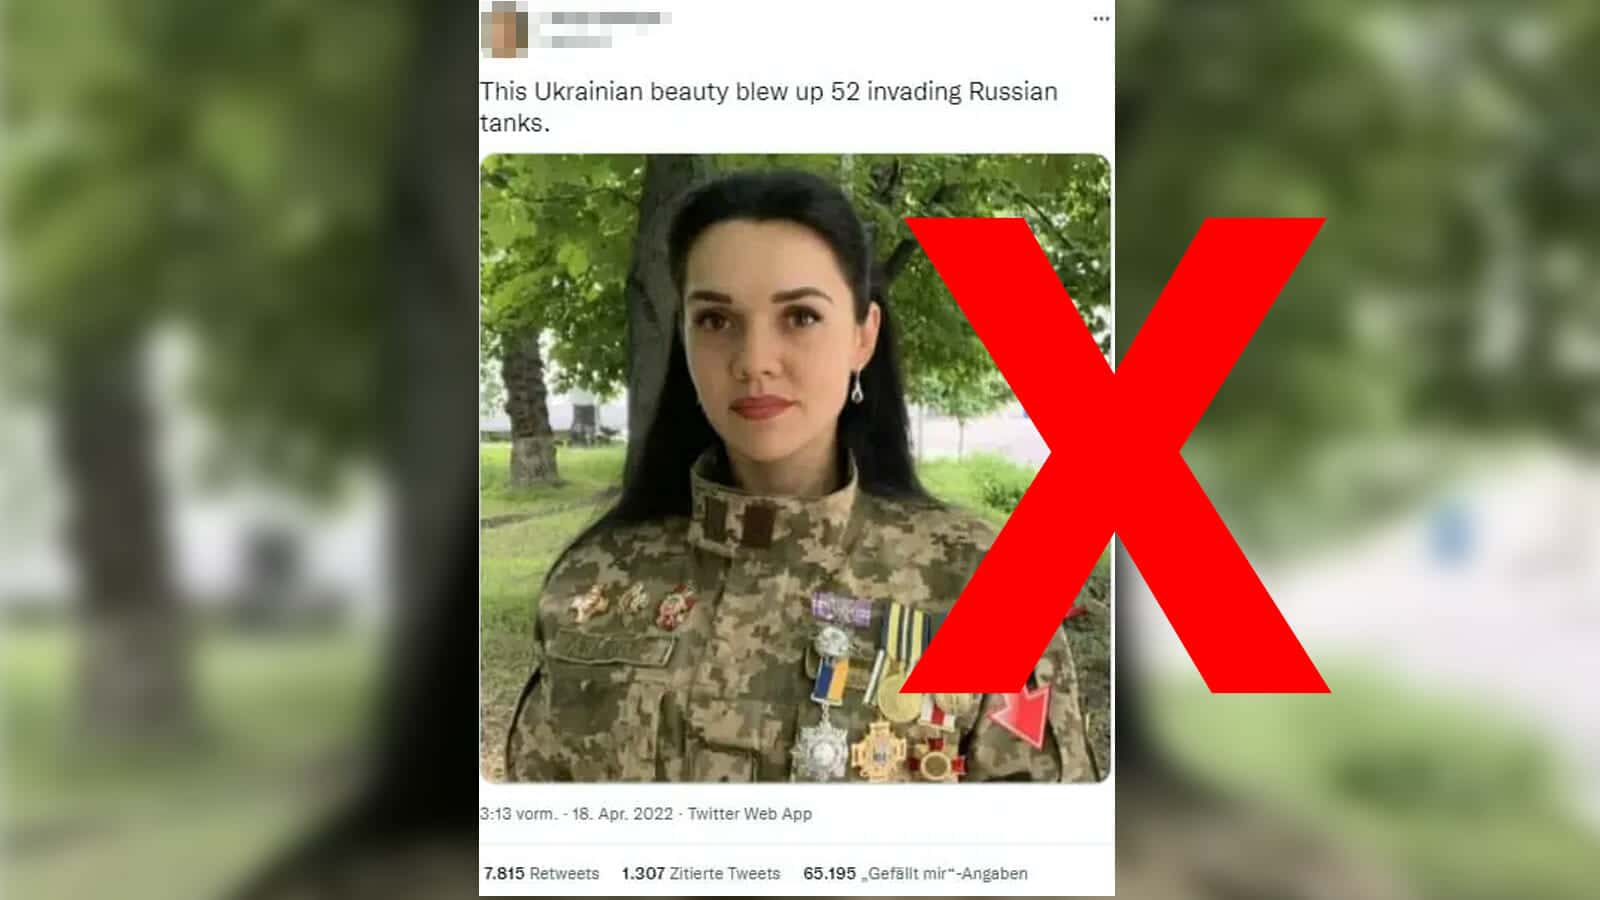 Nein, diese Frau zerstörte eher nicht 52 russische Panzer